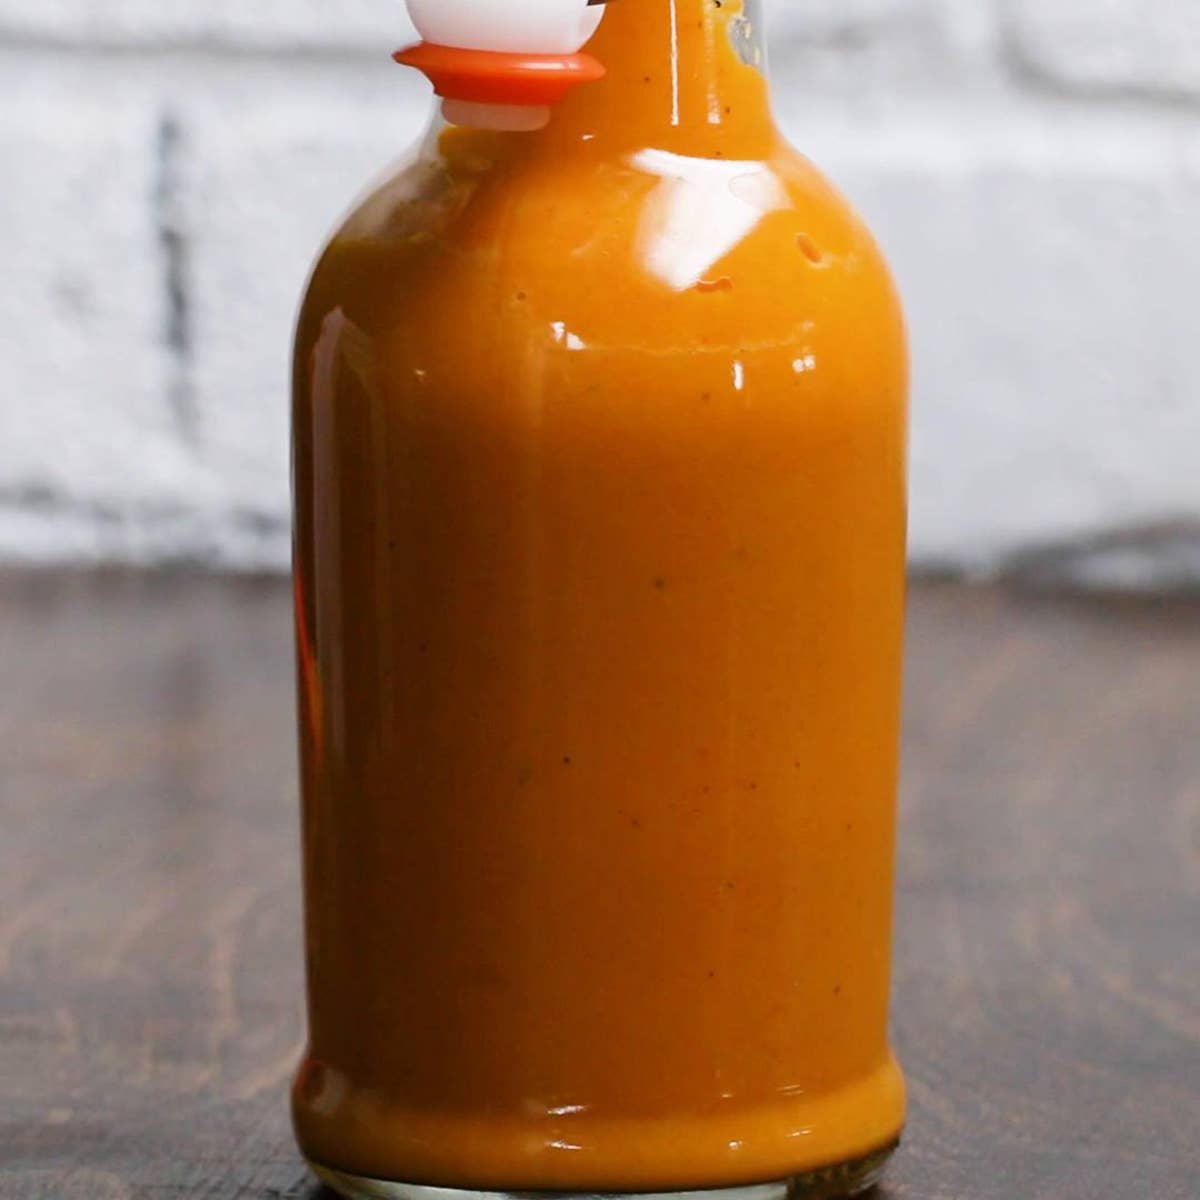 Habanero Hot Sauce Recipe by Tasty